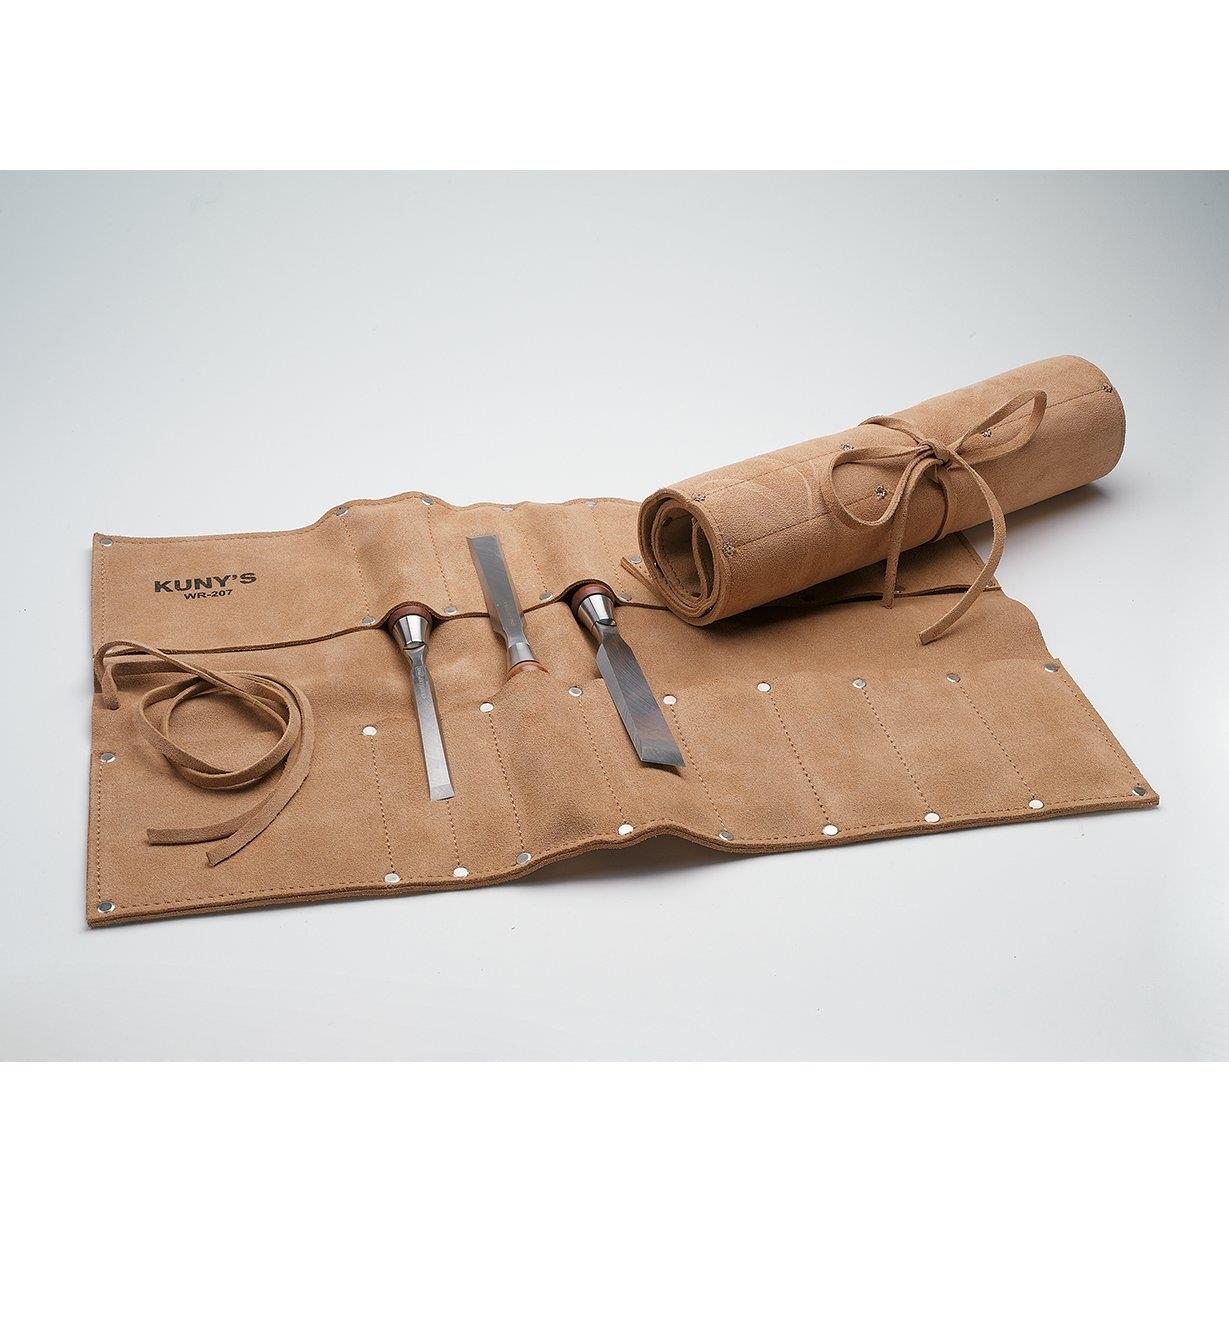 Deux trousses à outils en cuir, une enrouléee et l'autre ouverte contenant trois ciseaux à bois